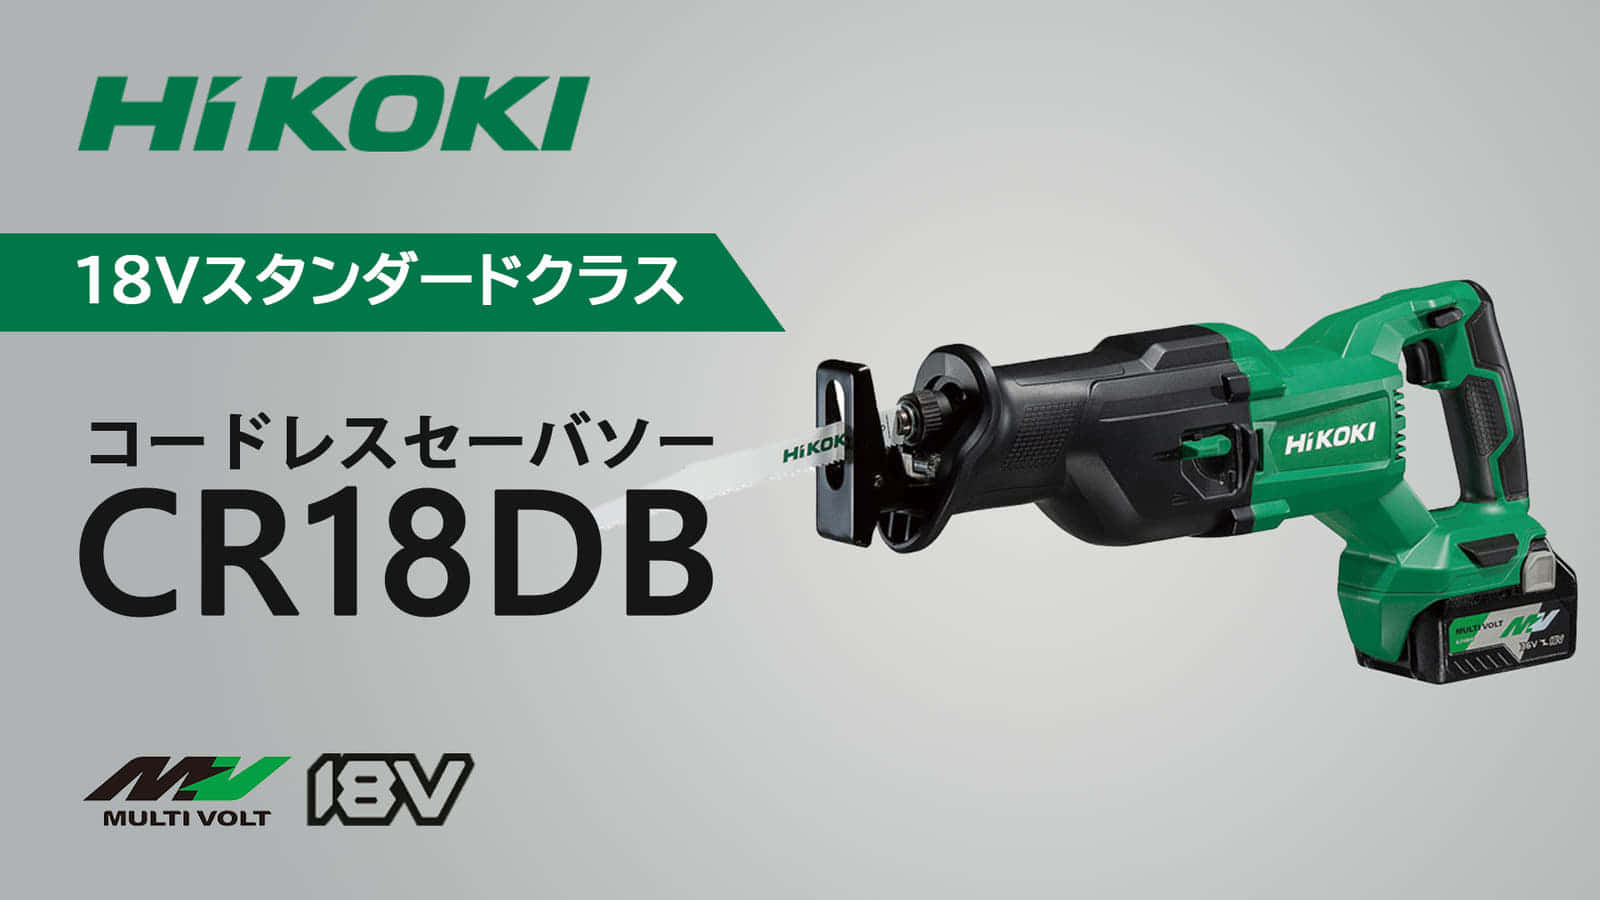 HiKOKI CR18DB コードレスセーバソーを発売、18V動作のスタンダードモデル